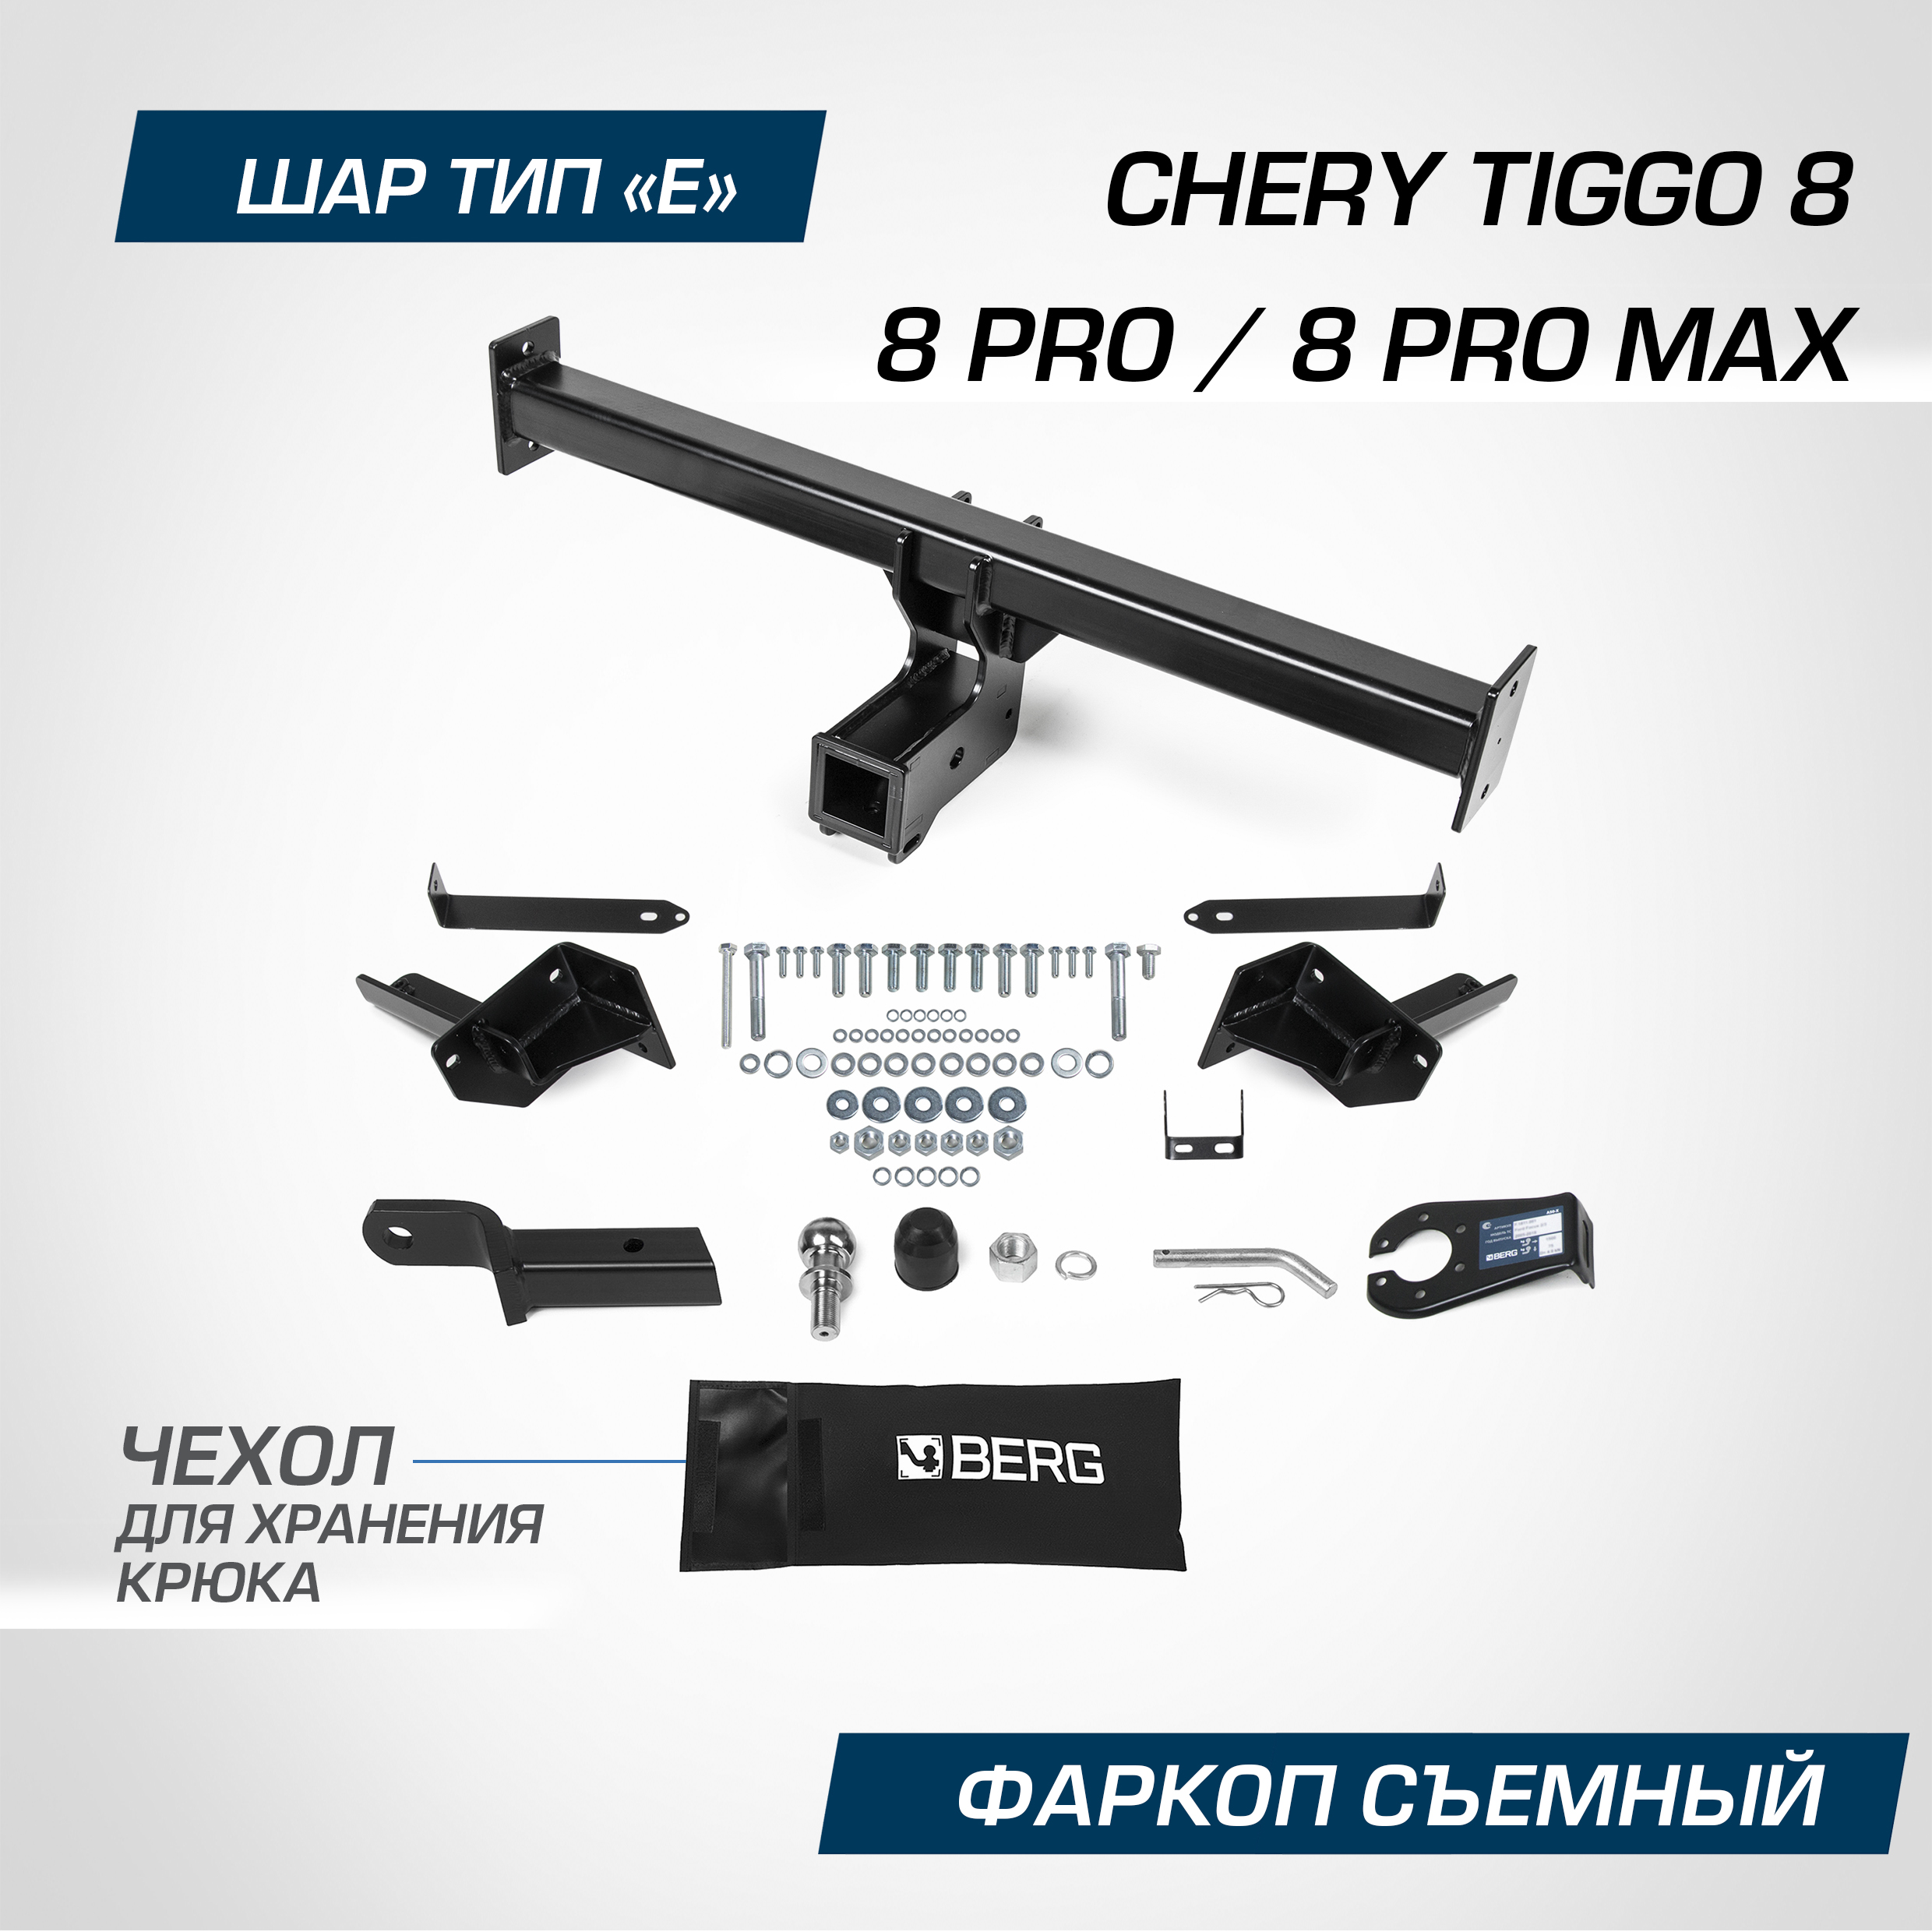 Фаркоп Berg Chery Tiggo 8 2020-2022 2022-/8 Pro 2021-/8 Pro Max 2022-, шар E, F.0913.002